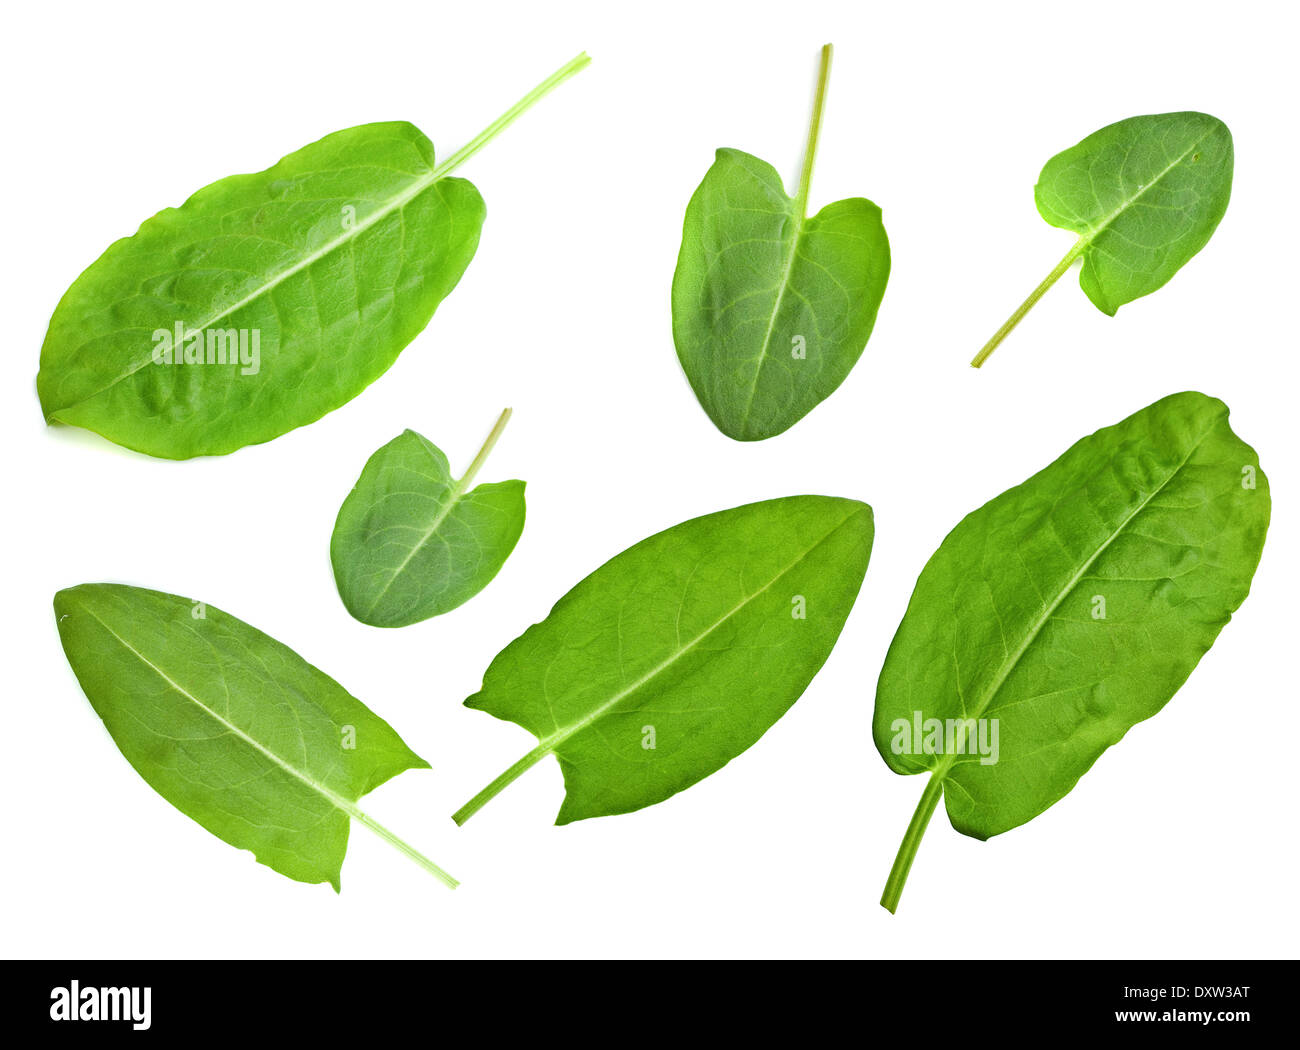 Rumex leaf closeup set isolated on white background Stock Photo